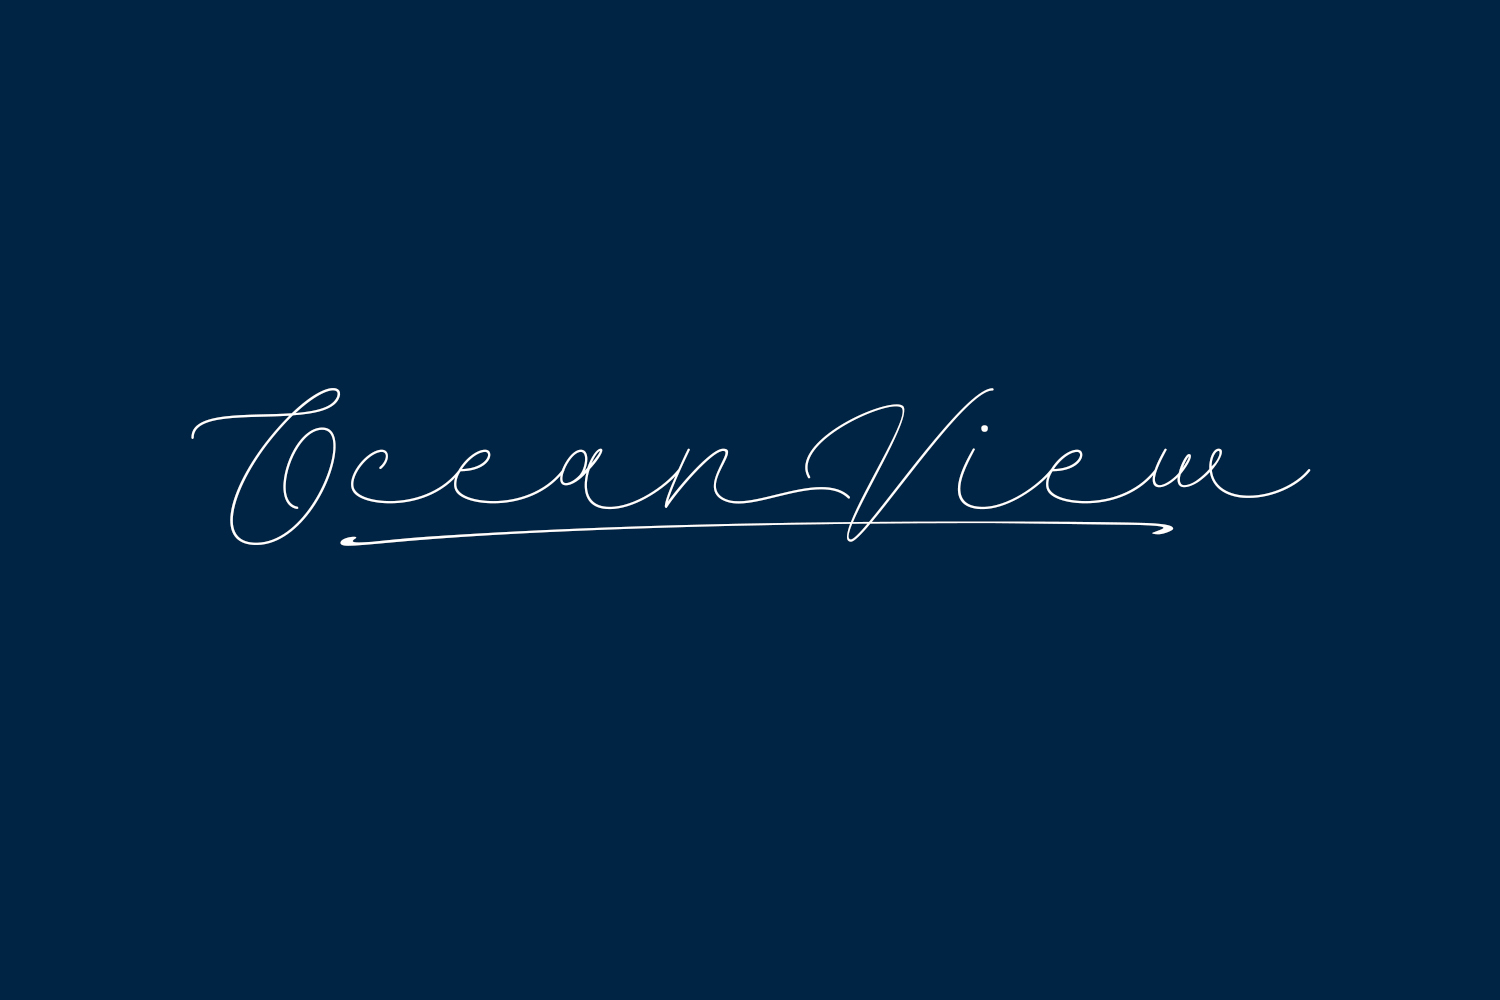 Ocean View Free Font